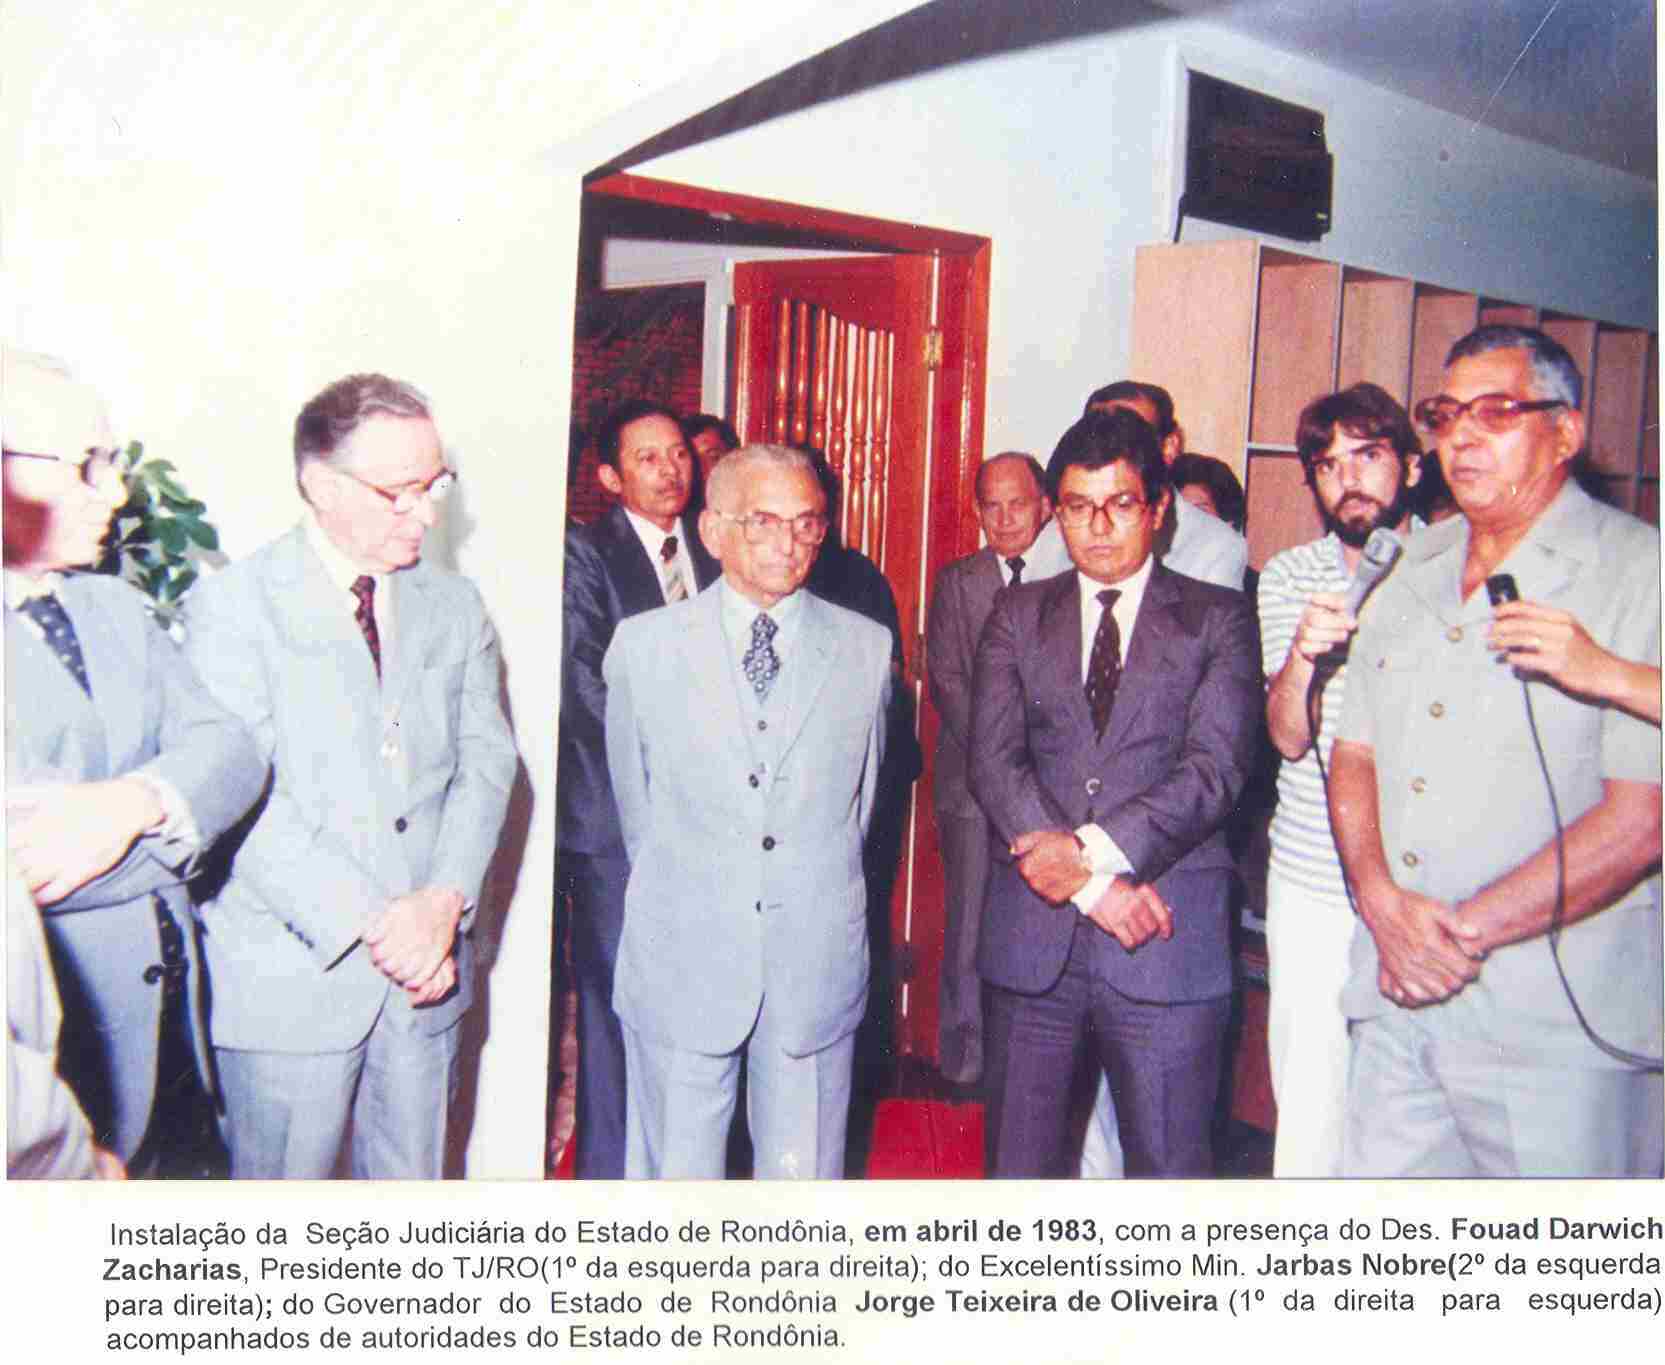 cena histórica da instalação da Seção Judiciária de Rondônia, em 1983